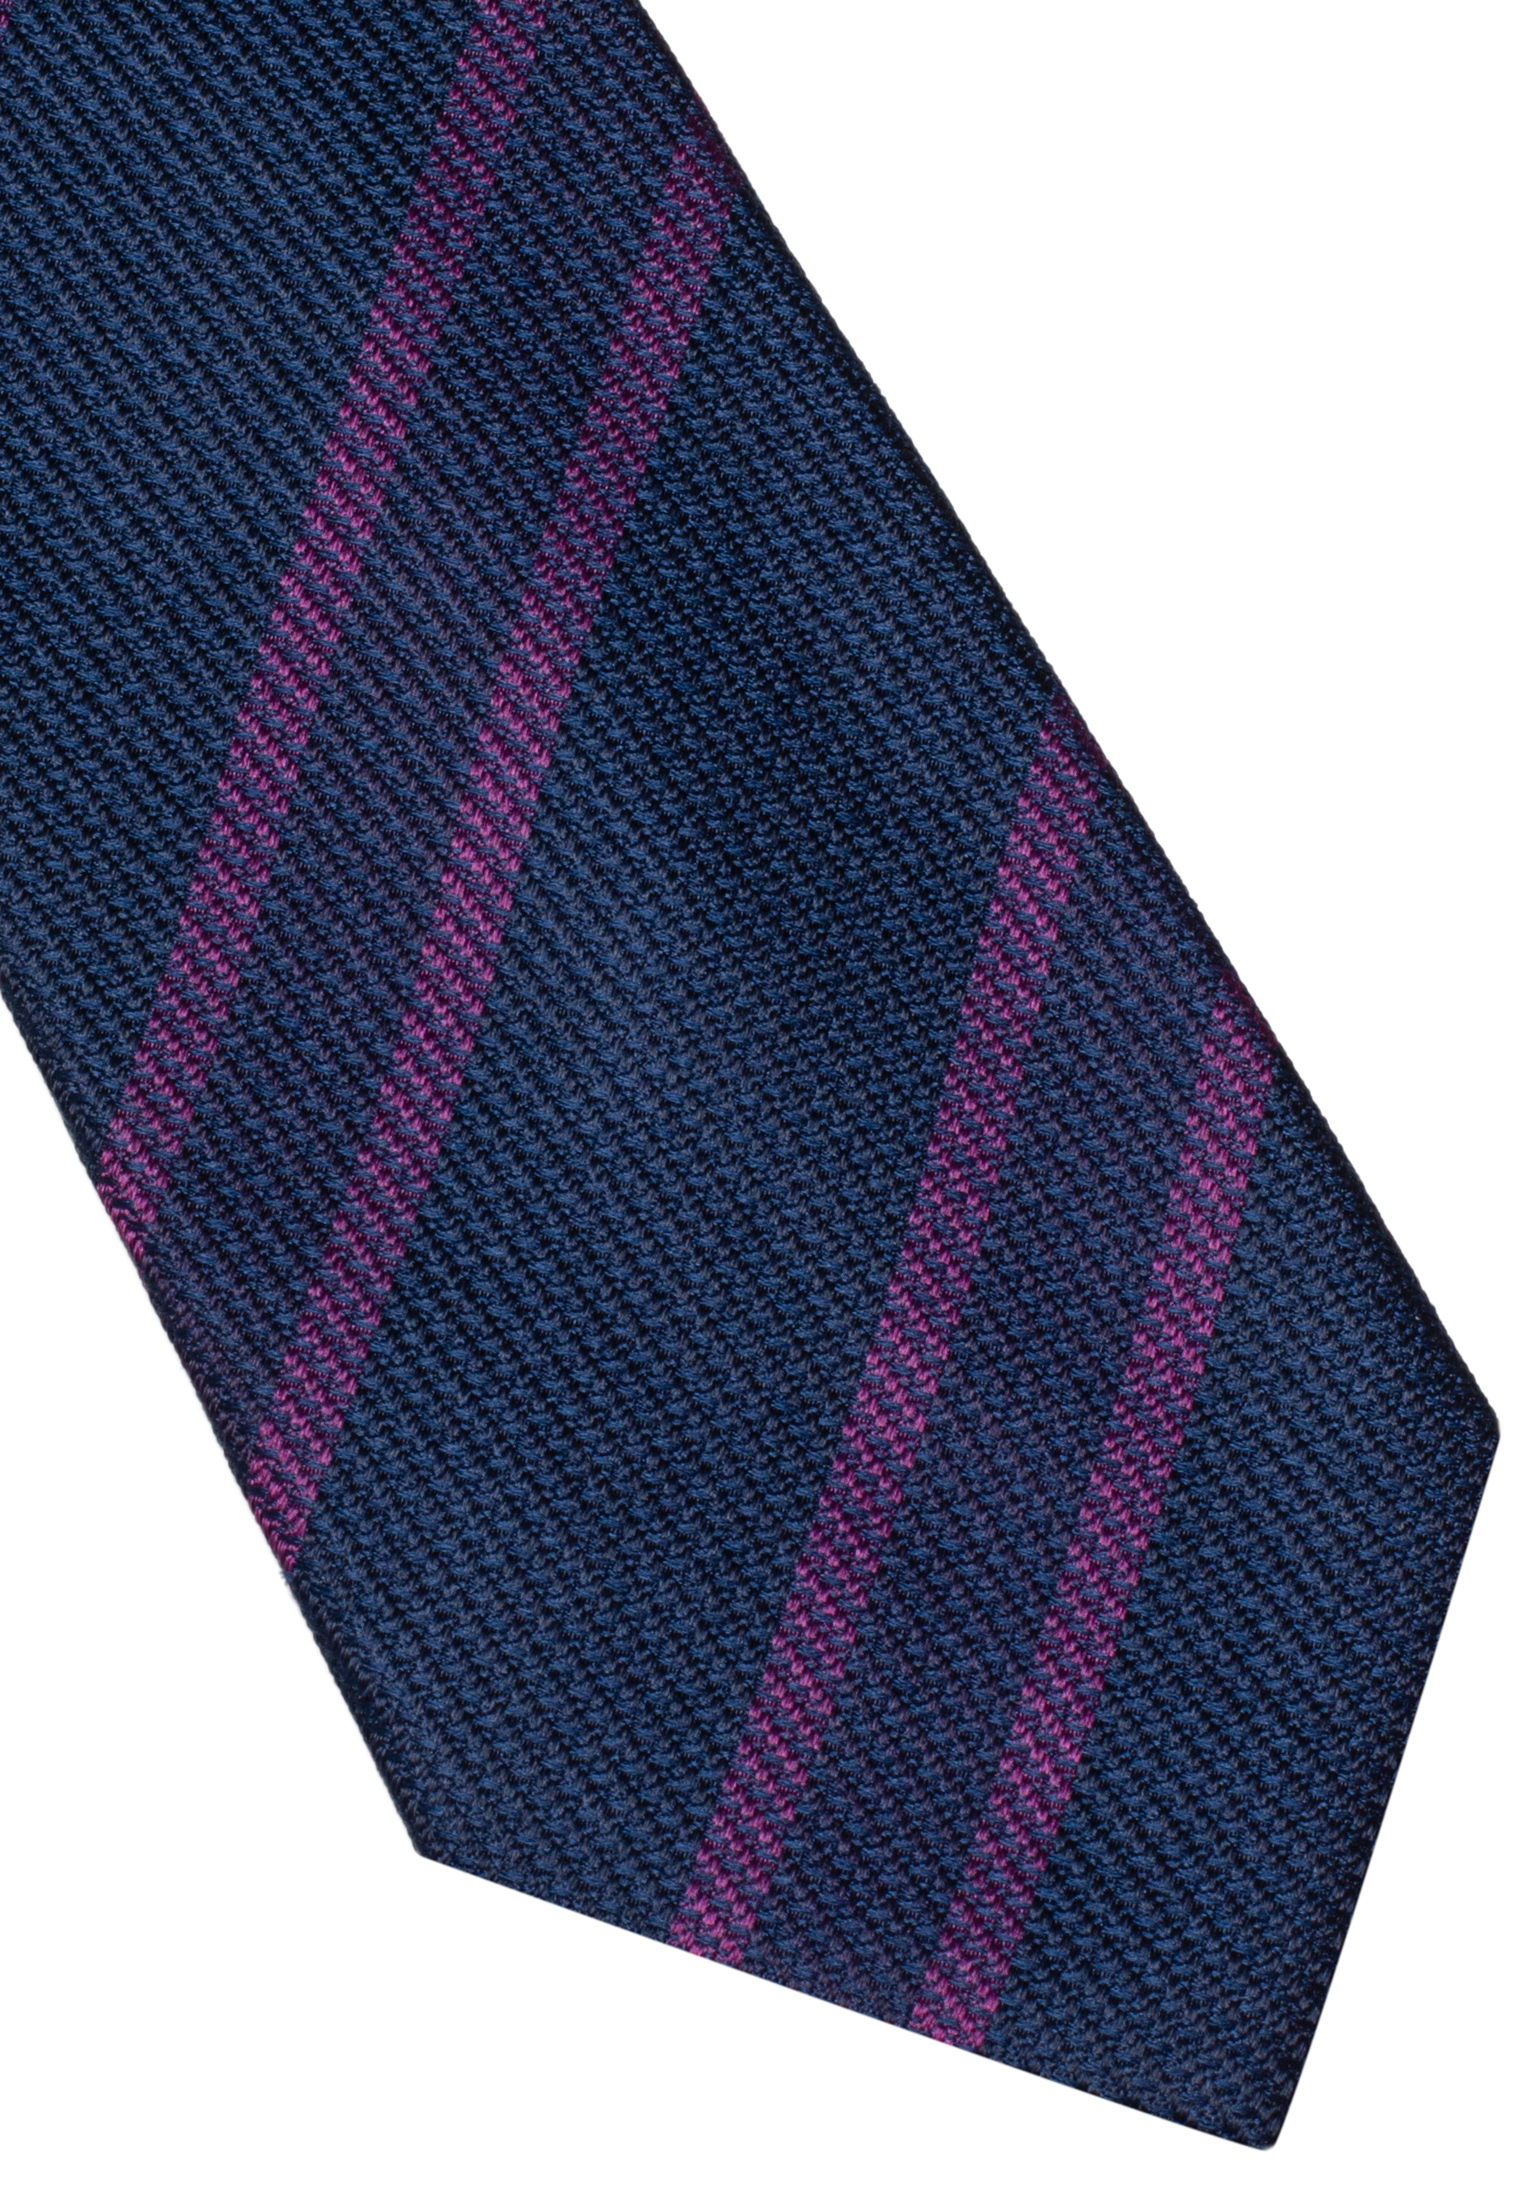 | Krawatte 1AC00360-09-01-142 in lila 142 | | lila gestreift